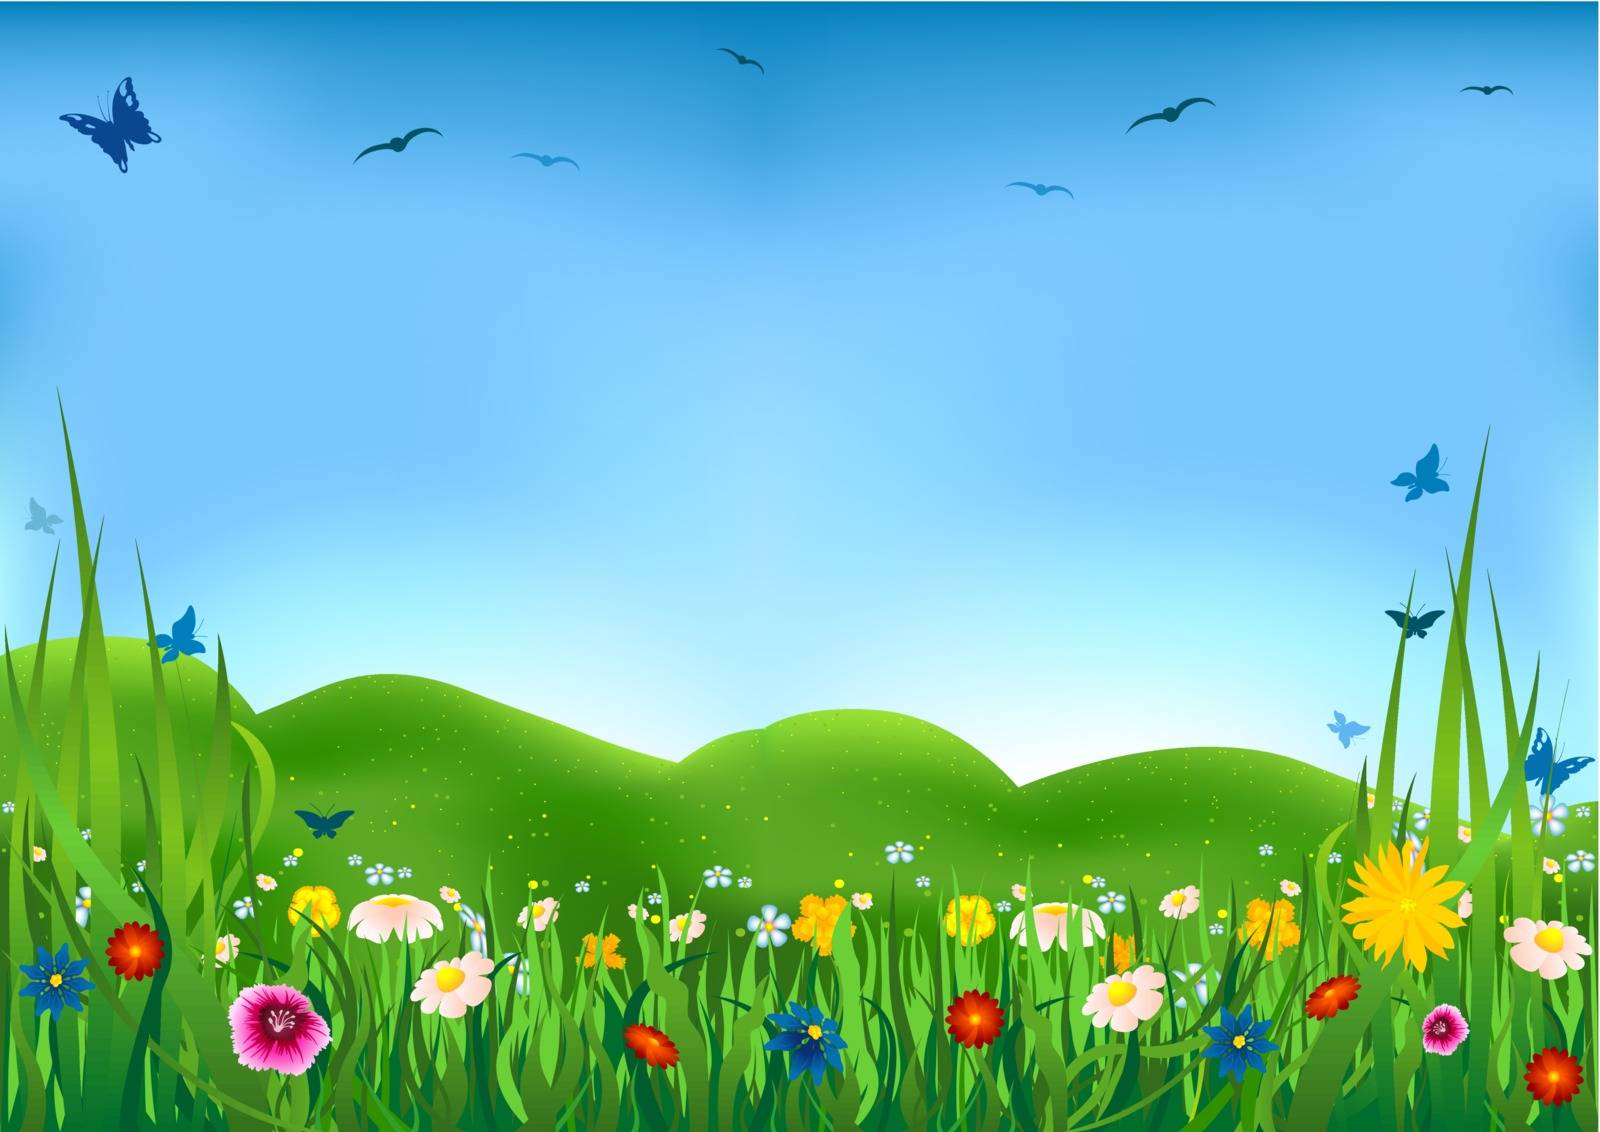 Flowering Meadow by illustratorCZ